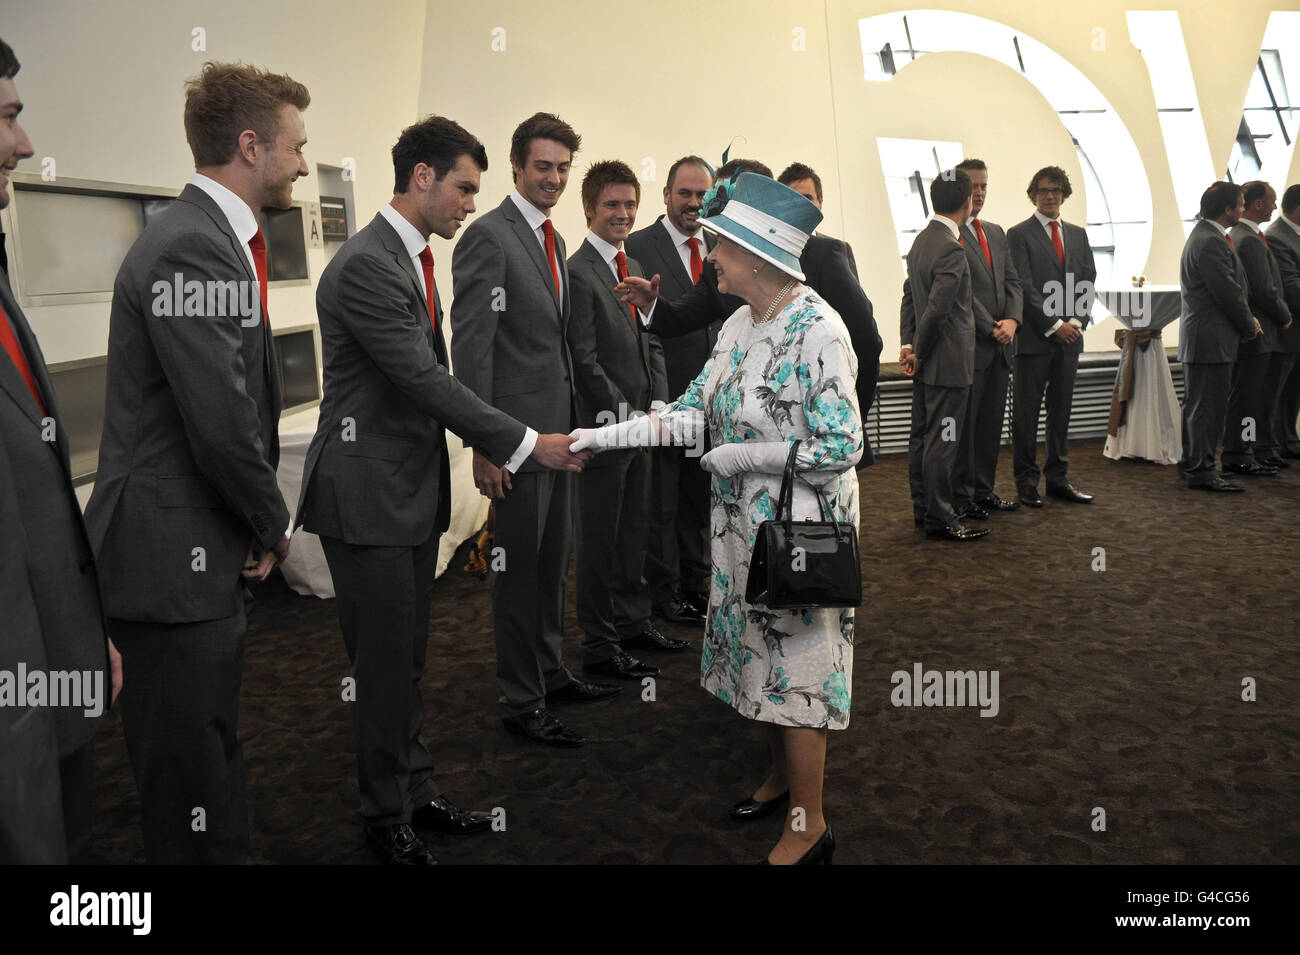 Königin Elizabeth II. Trifft sich mit Mitgliedern der Vokalgruppe „Only Men Aloud“ im Wales Millennium Center, wo ein Empfang für die Mitglieder der Versammlung stattfindet. Stockfoto